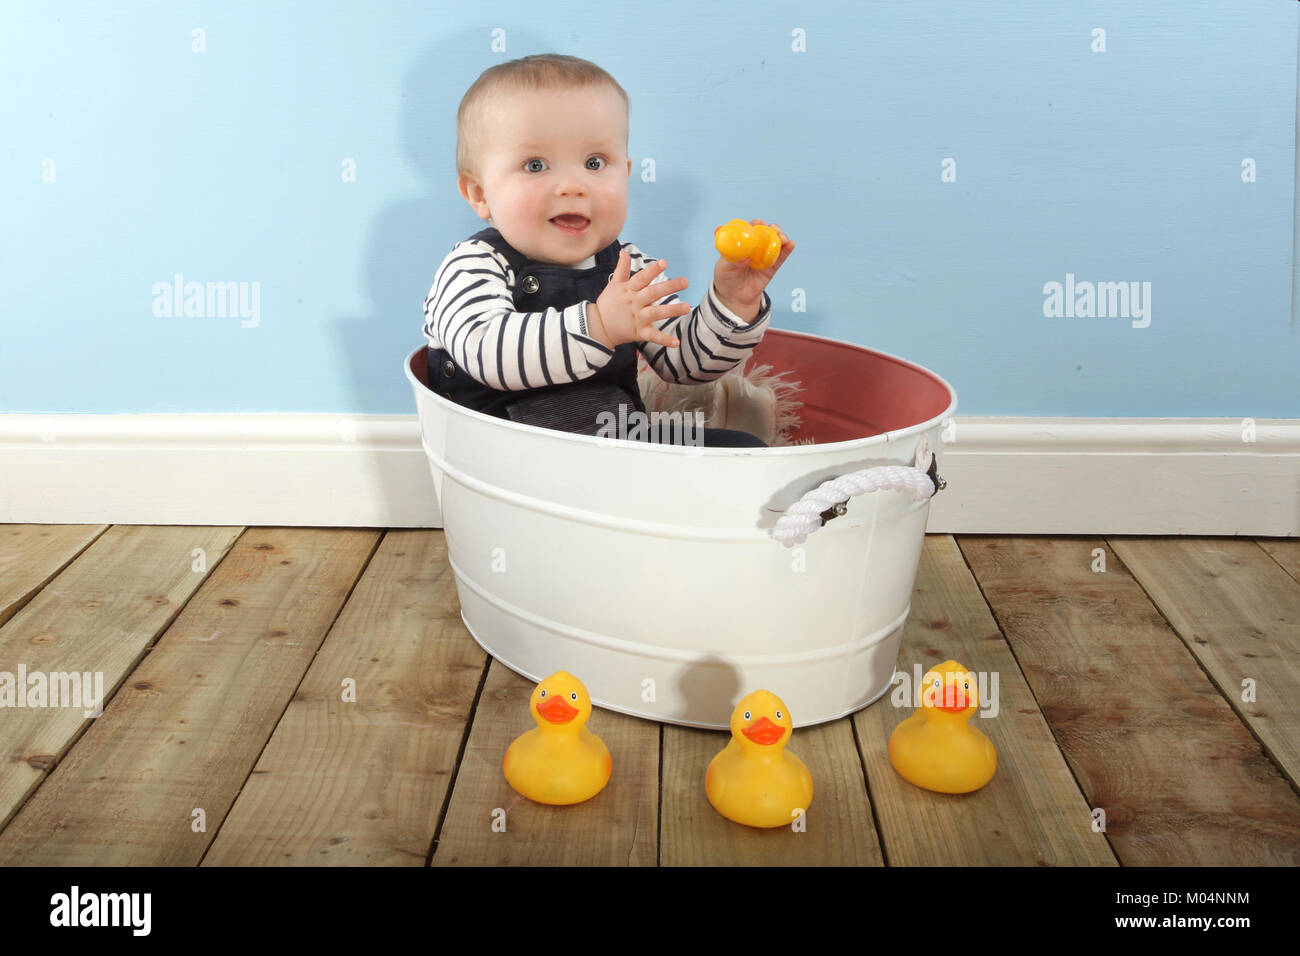 Un bébé de 9 mois Garçon jouant avec des canards en caoutchouc Banque D'Images